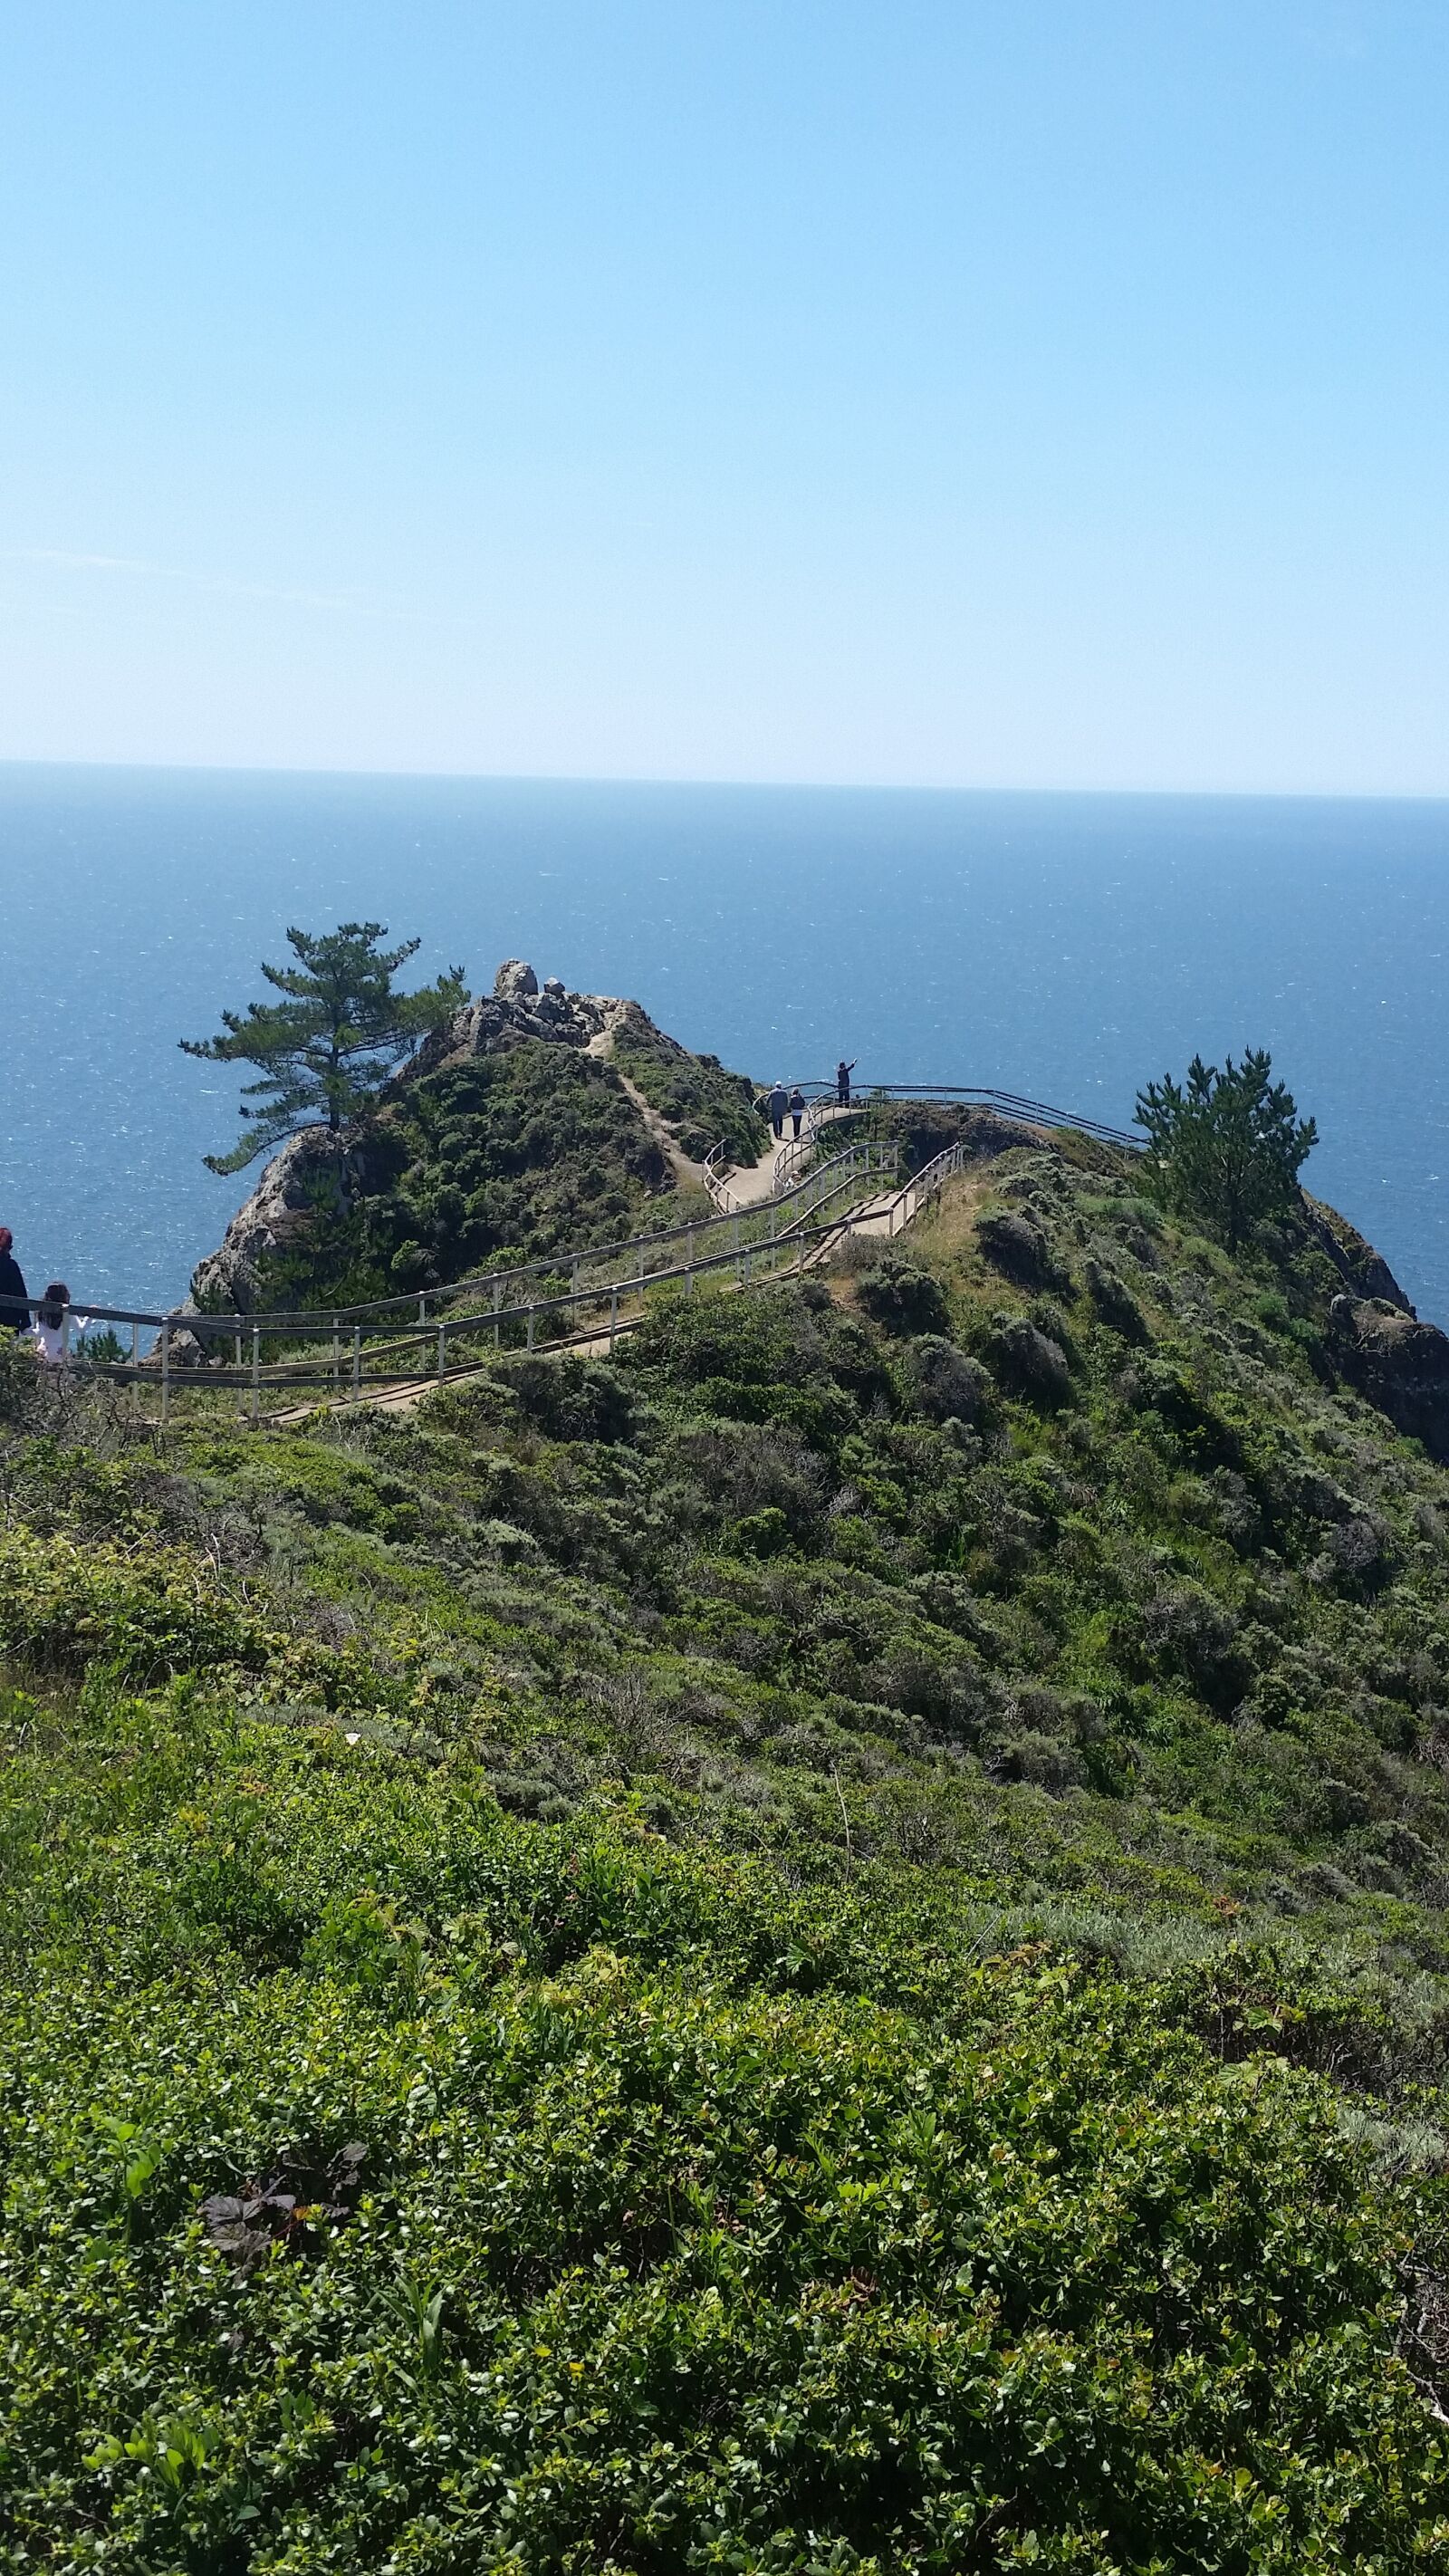 Samsung Galaxy S5 sample photo. California, mountain, ocean, view photography